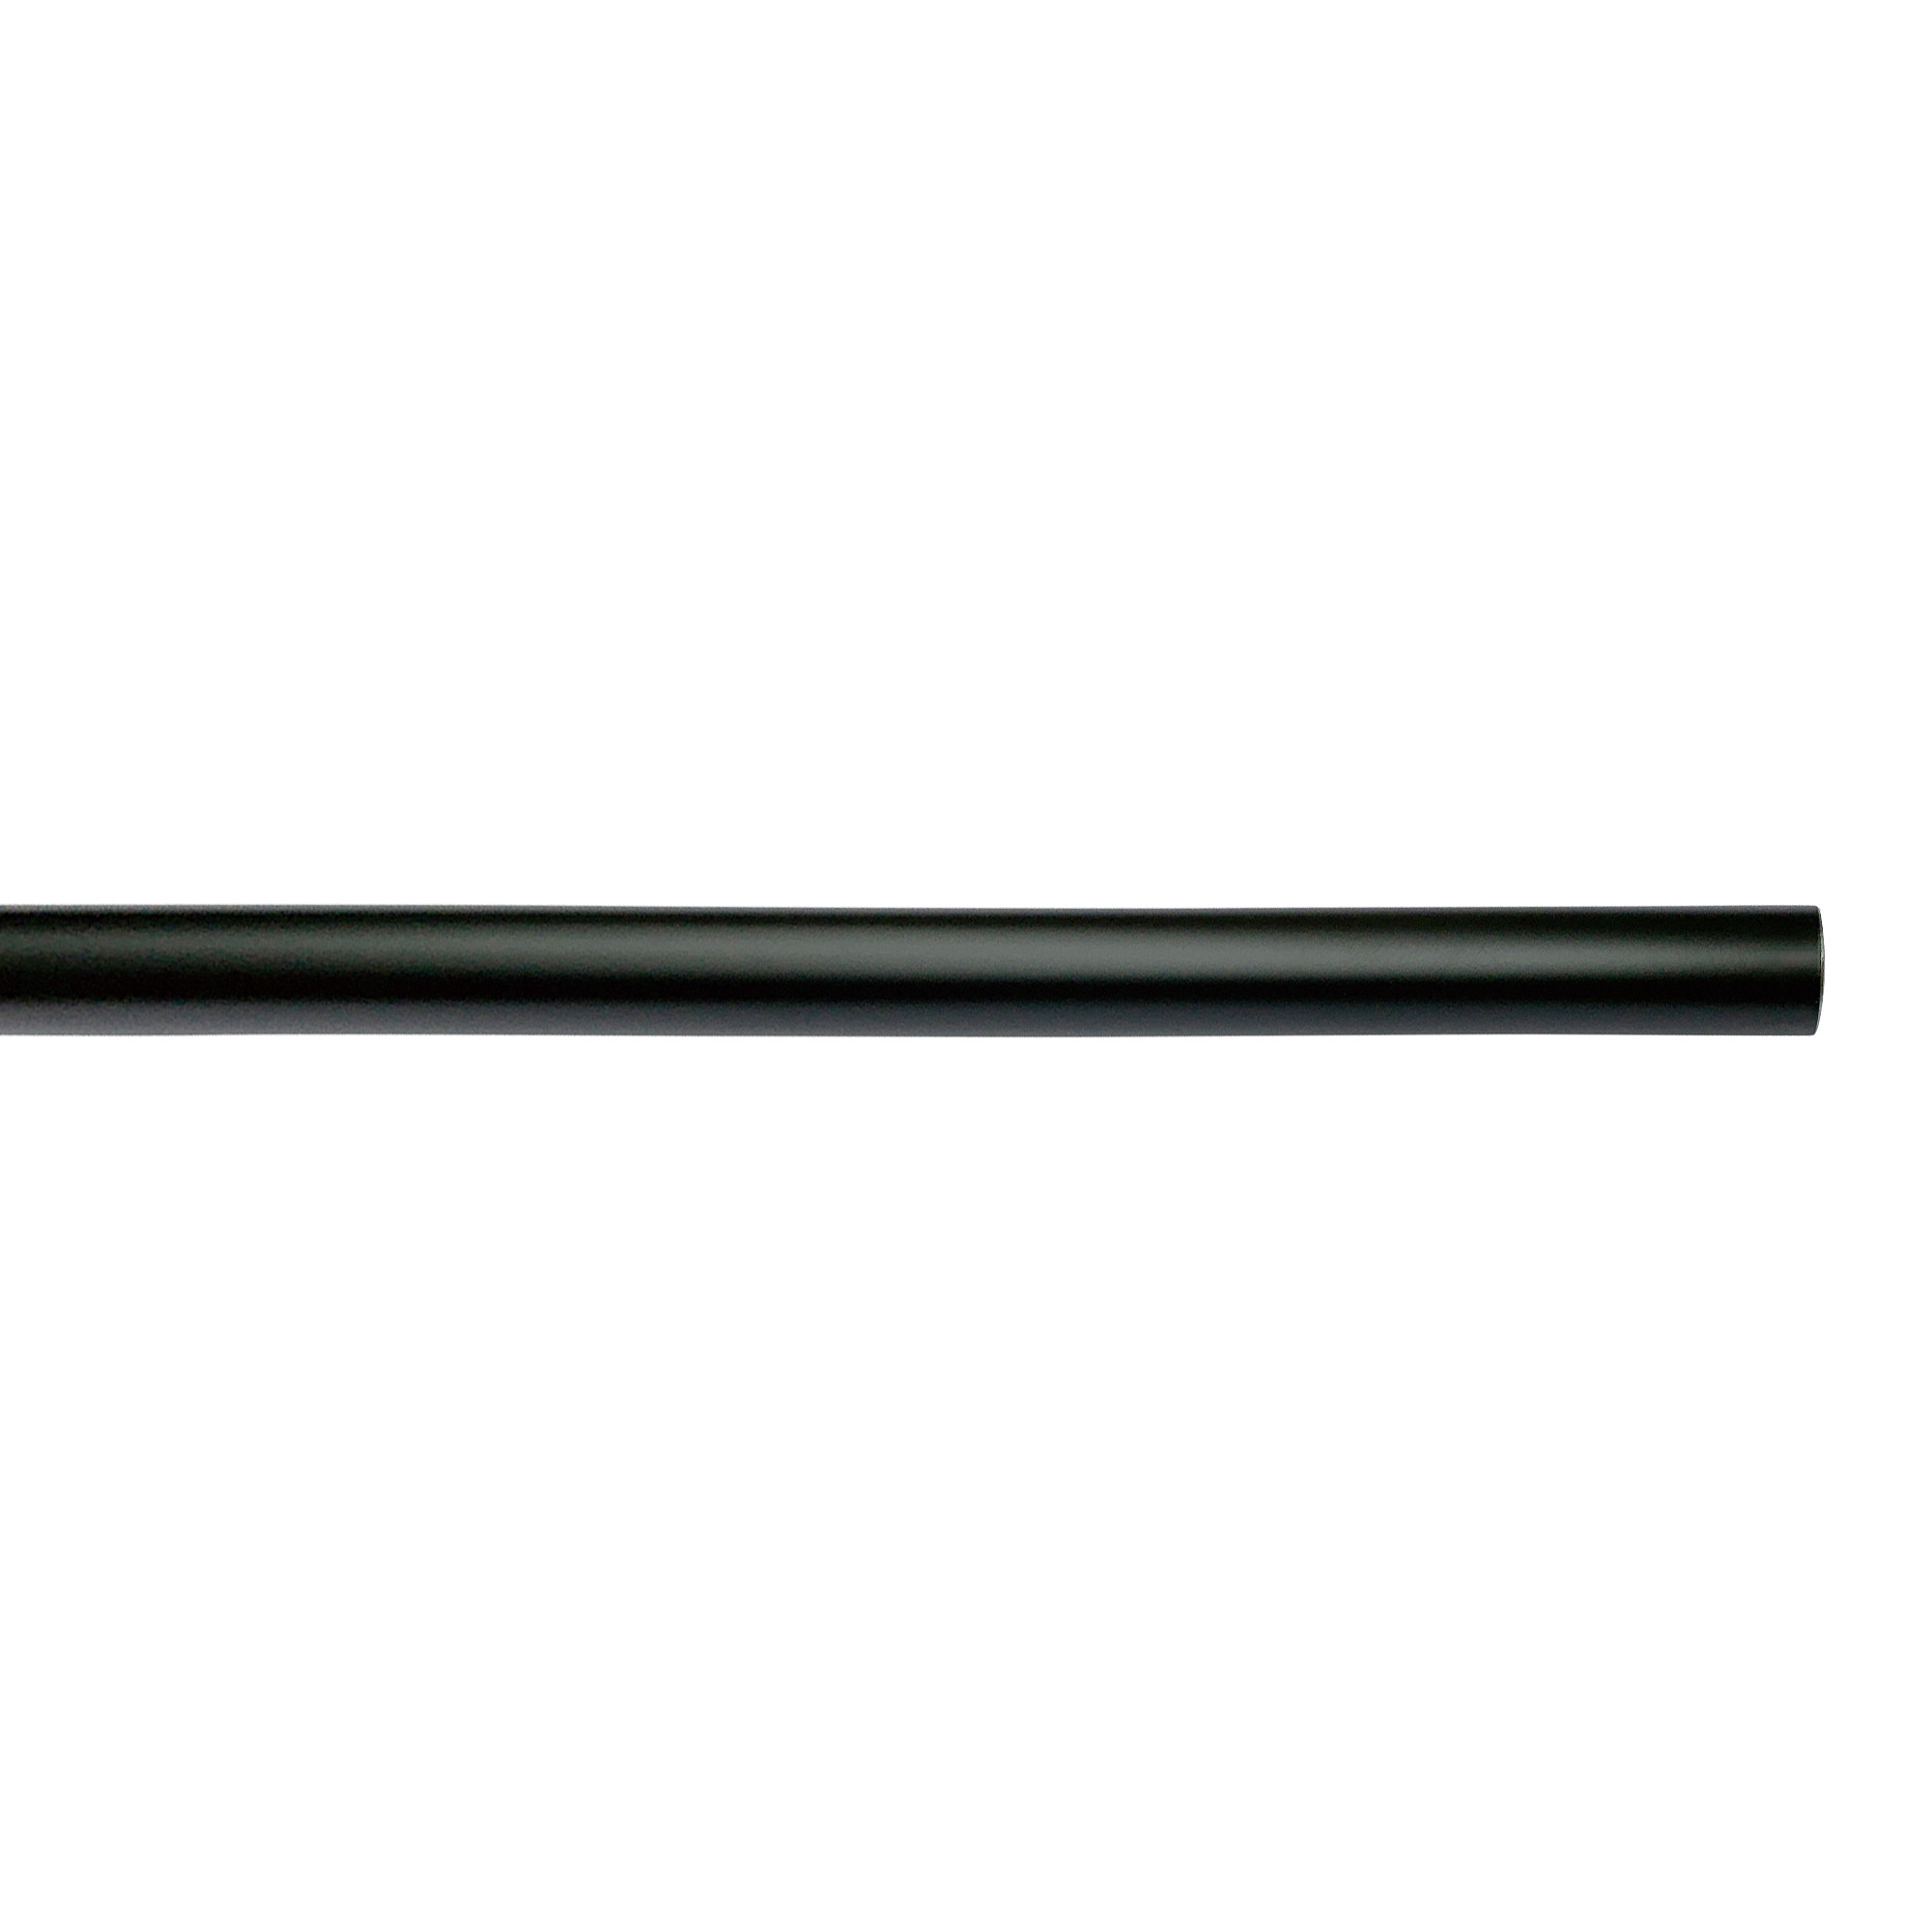 アイアンハンガーパイプ F型-棚下吊タイプ H100 ブラック PS-HB008-69-G141 水平パイプは3サイズから2本、それぞれお好きな長さを選択可能です